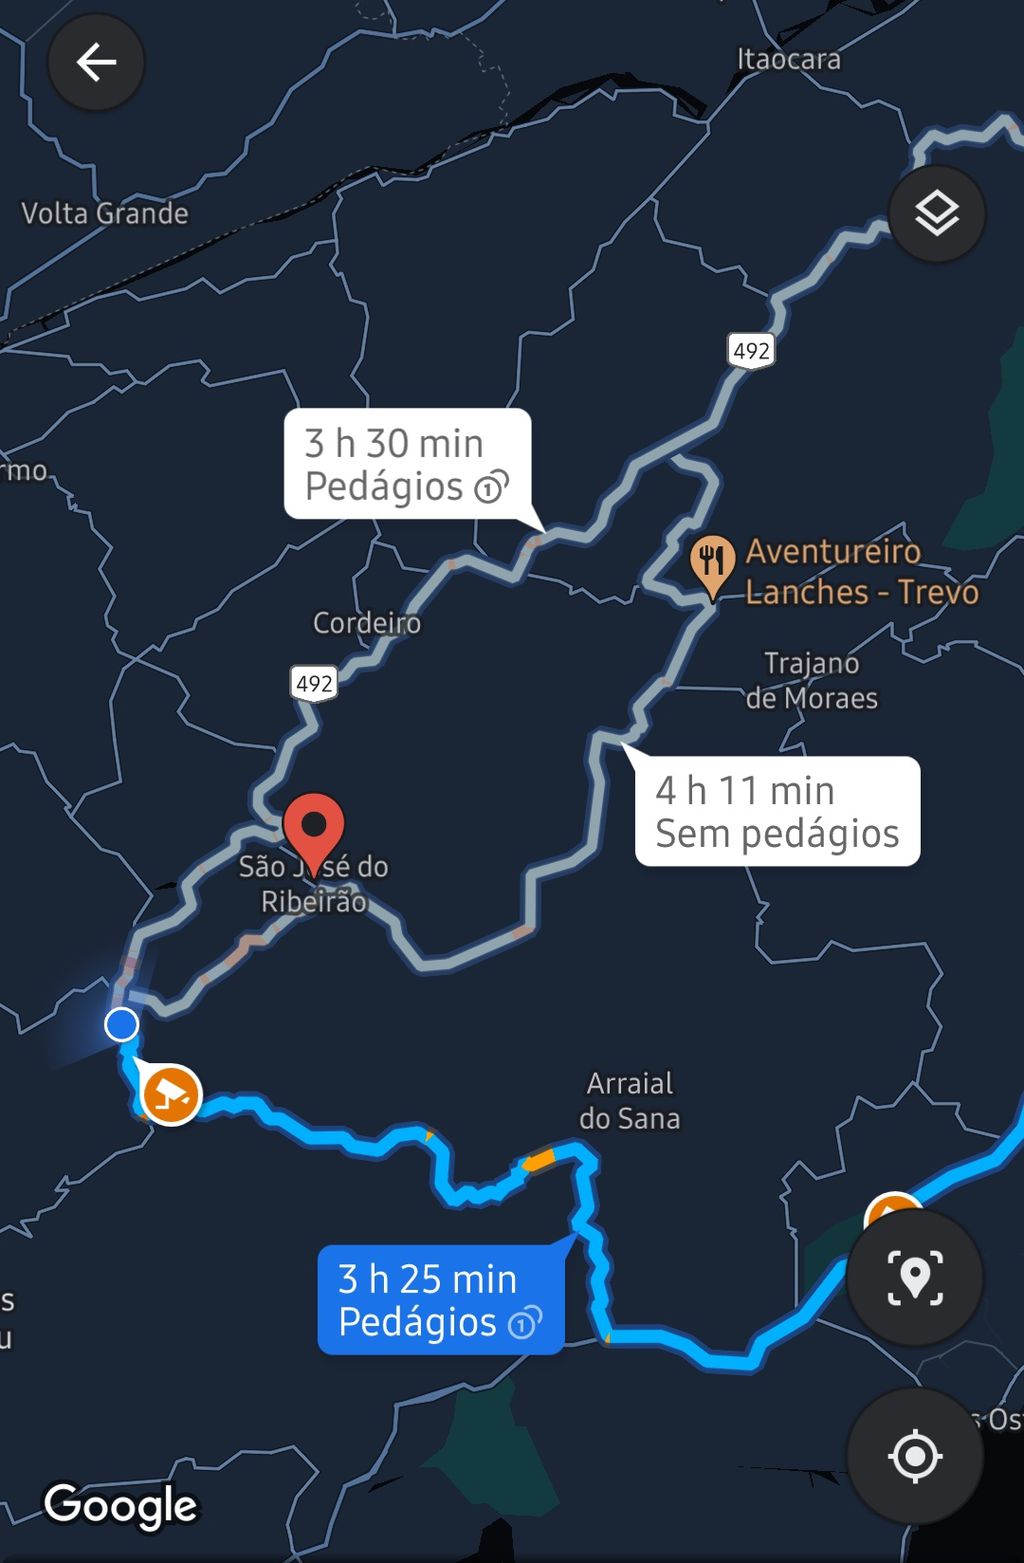 Hoje, o Google Maps consegue indicar onde são os pontos de cobrança em uma rodovia, mas sem dar detalhes sobre o preço da passagem (Captura: Igor Almenara/Canaltech)